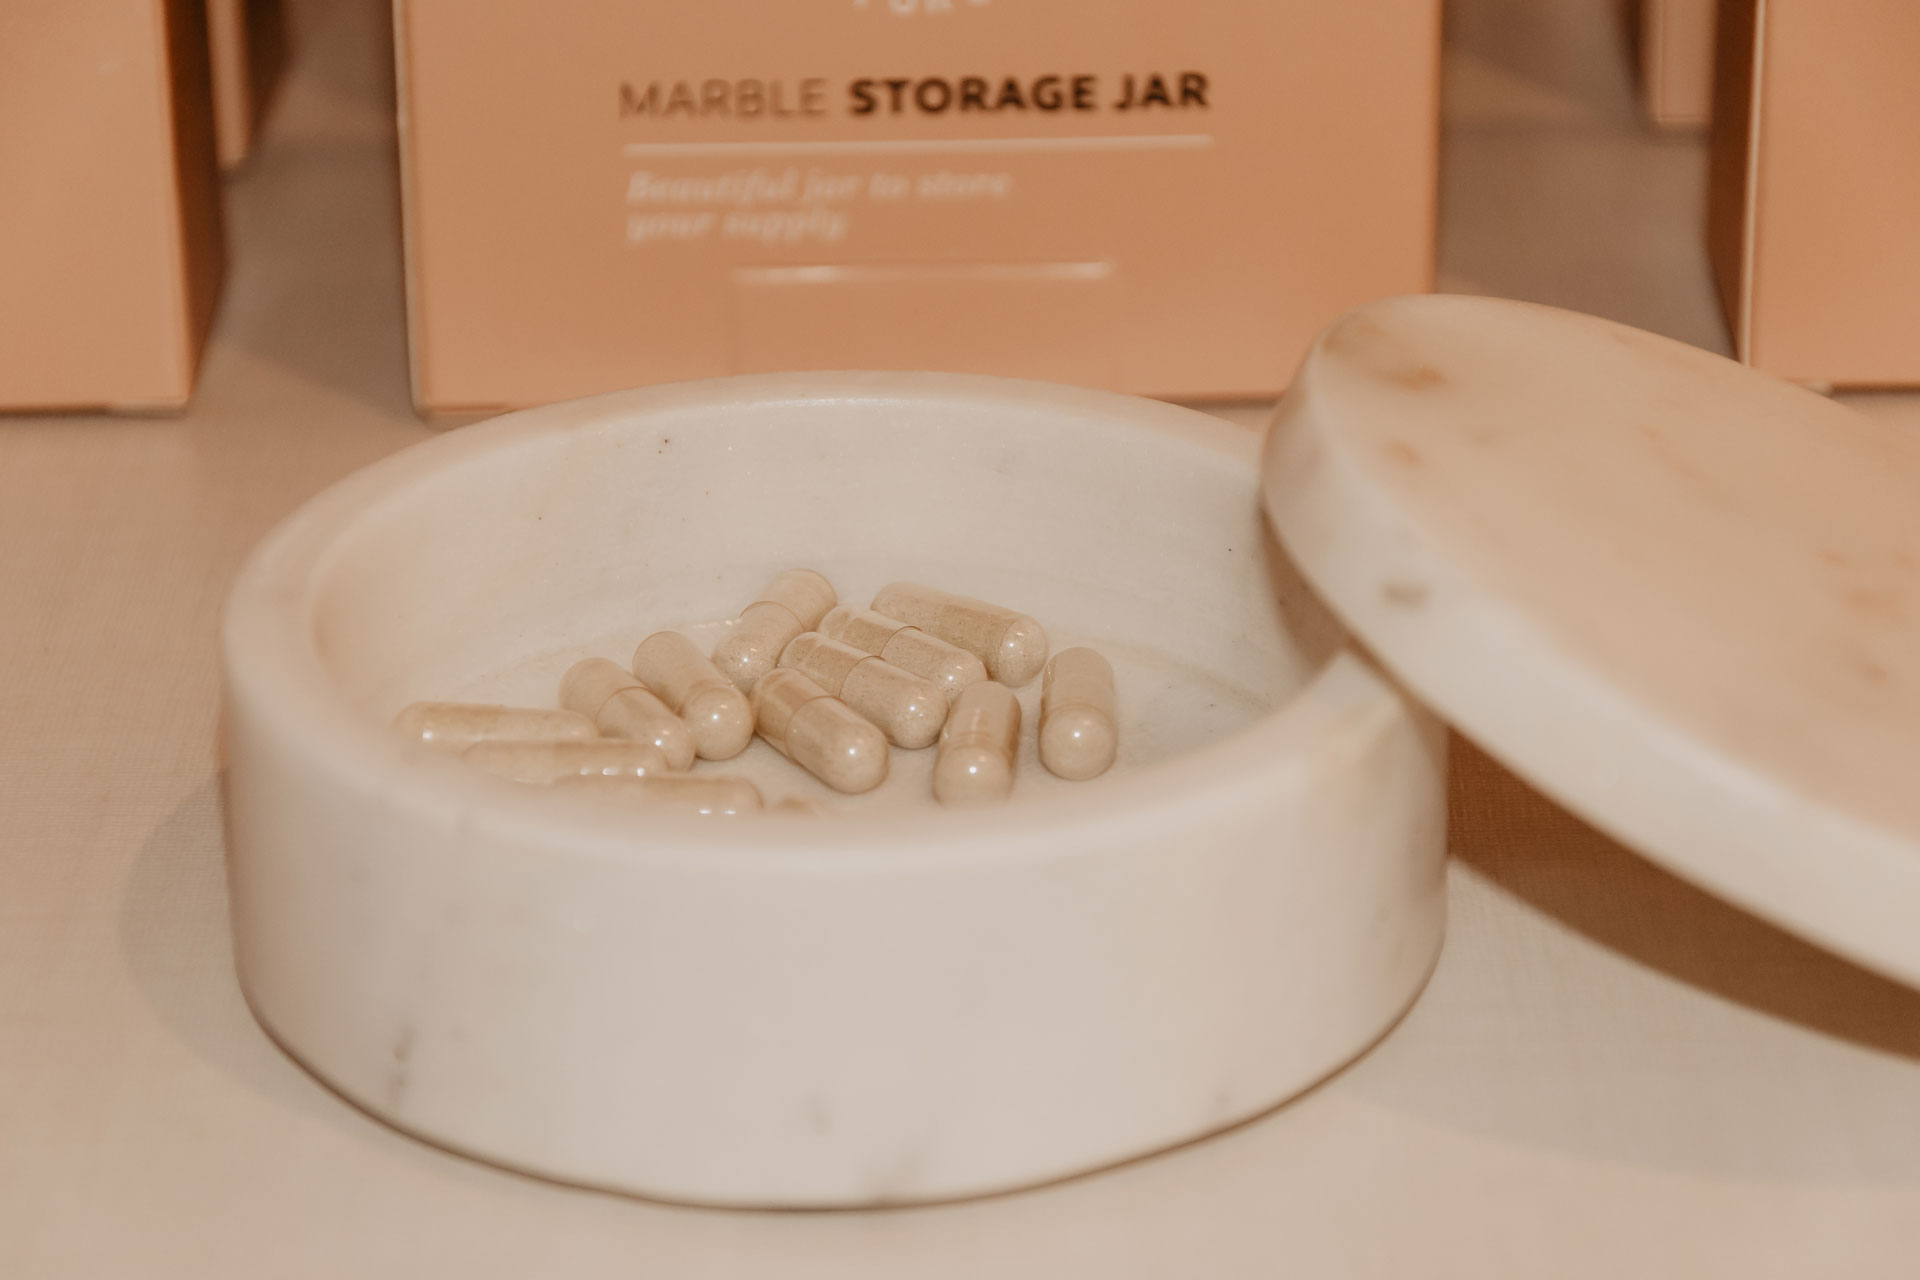 Marble<br><b>storage jar</b>